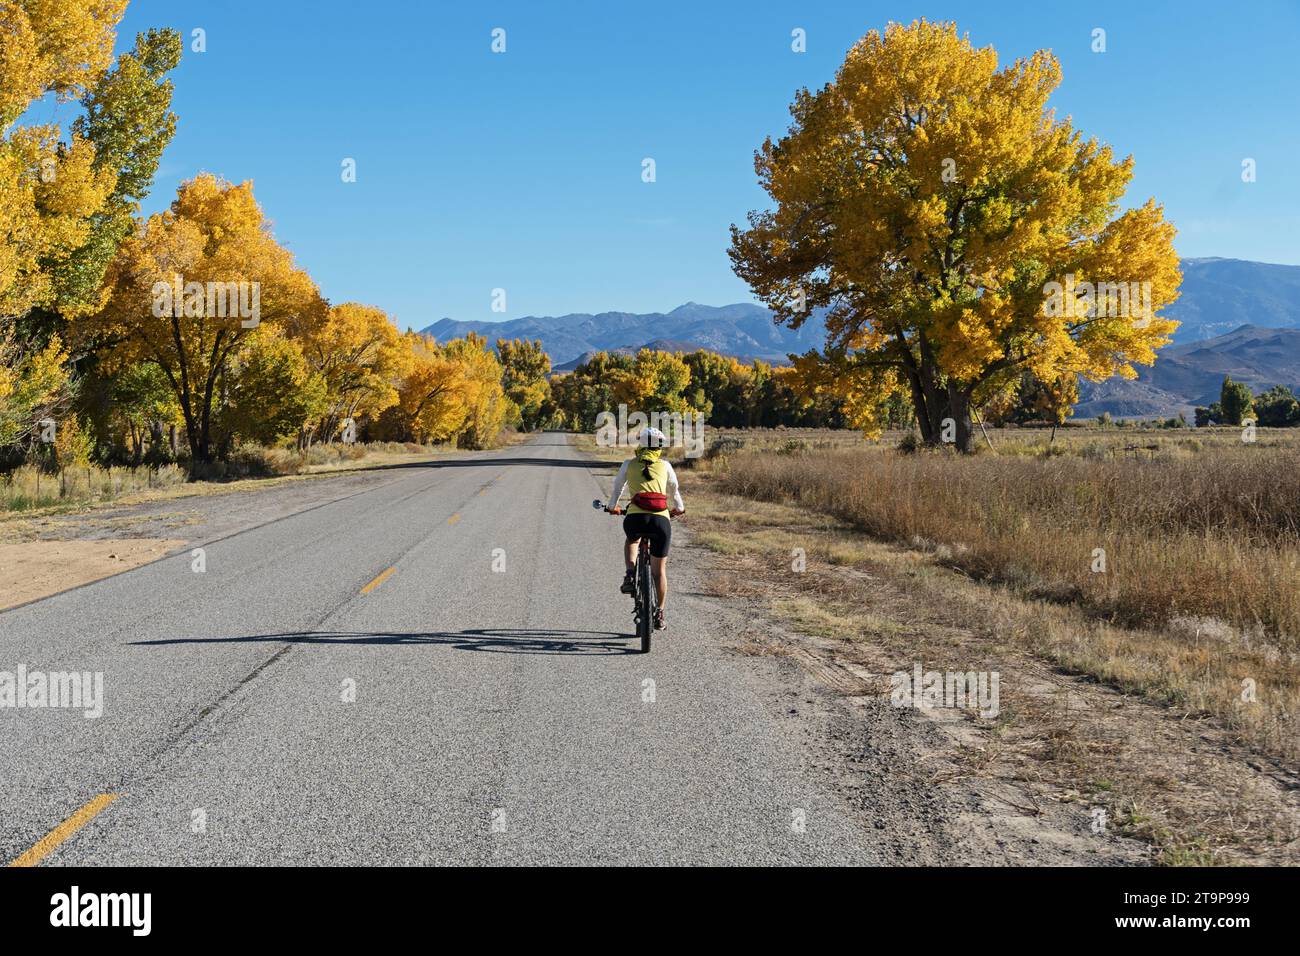 femme pédalant sur une route de campagne à deux voies vers les montagnes à l'automne avec des arbres de cotonnier jaune et ciel bleu Banque D'Images